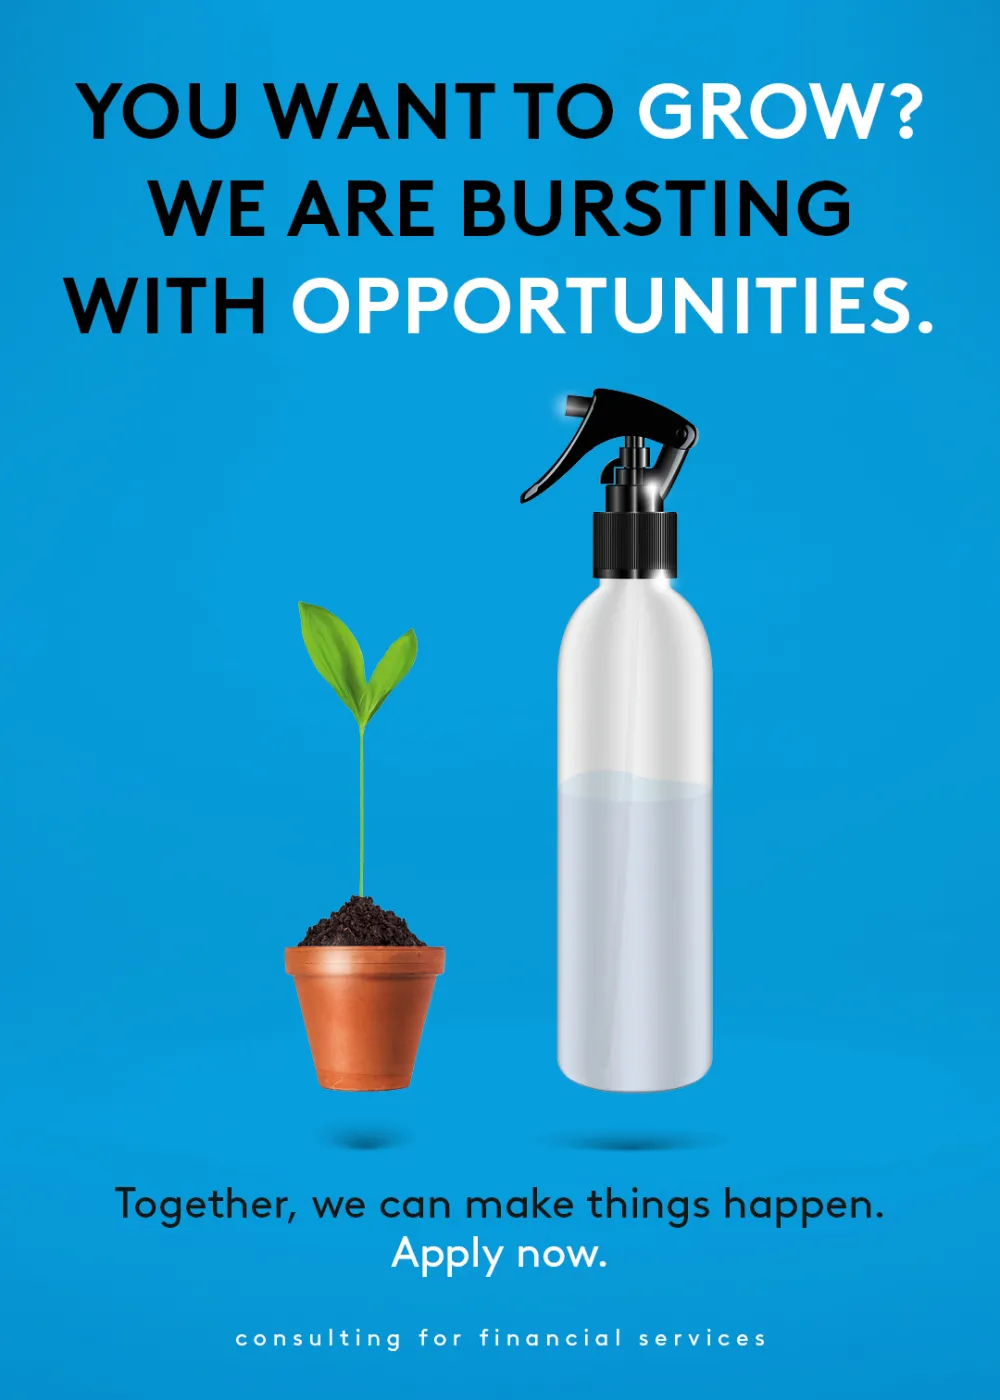 Oberhalb steht der Text "You want to grow? We are bursting with opportunities." Unterhalb des Texts befindet sich eine Pflanze und eine Sprühflasche.